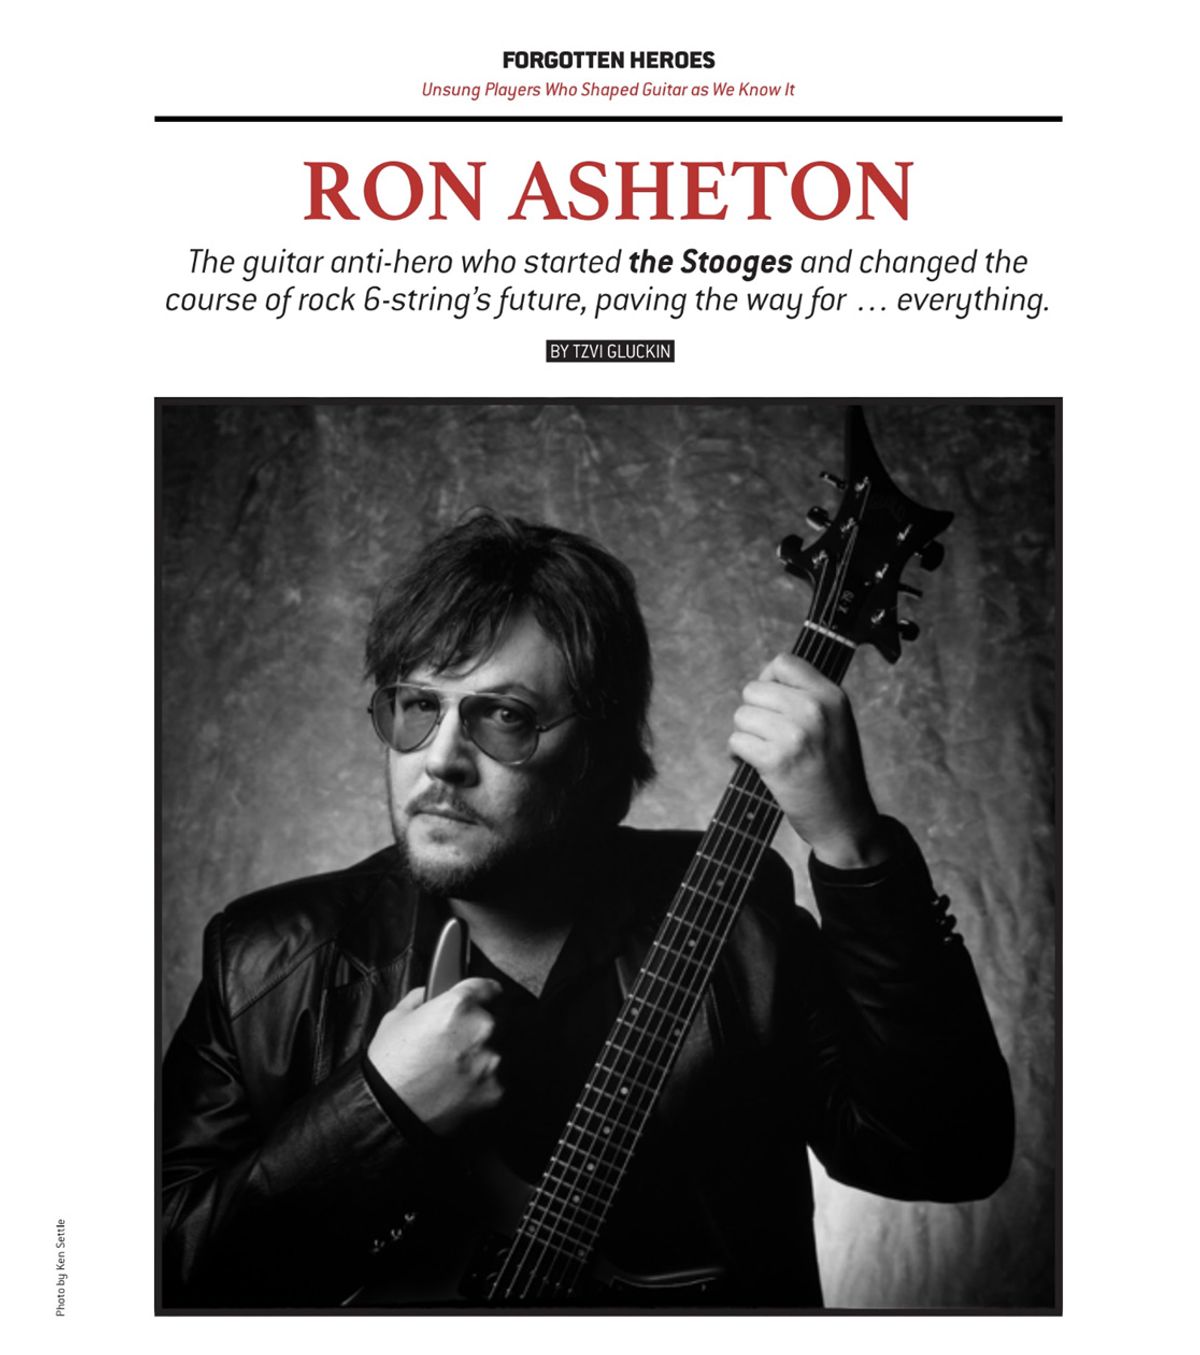 Forgotten Heroes: Ron Asheton